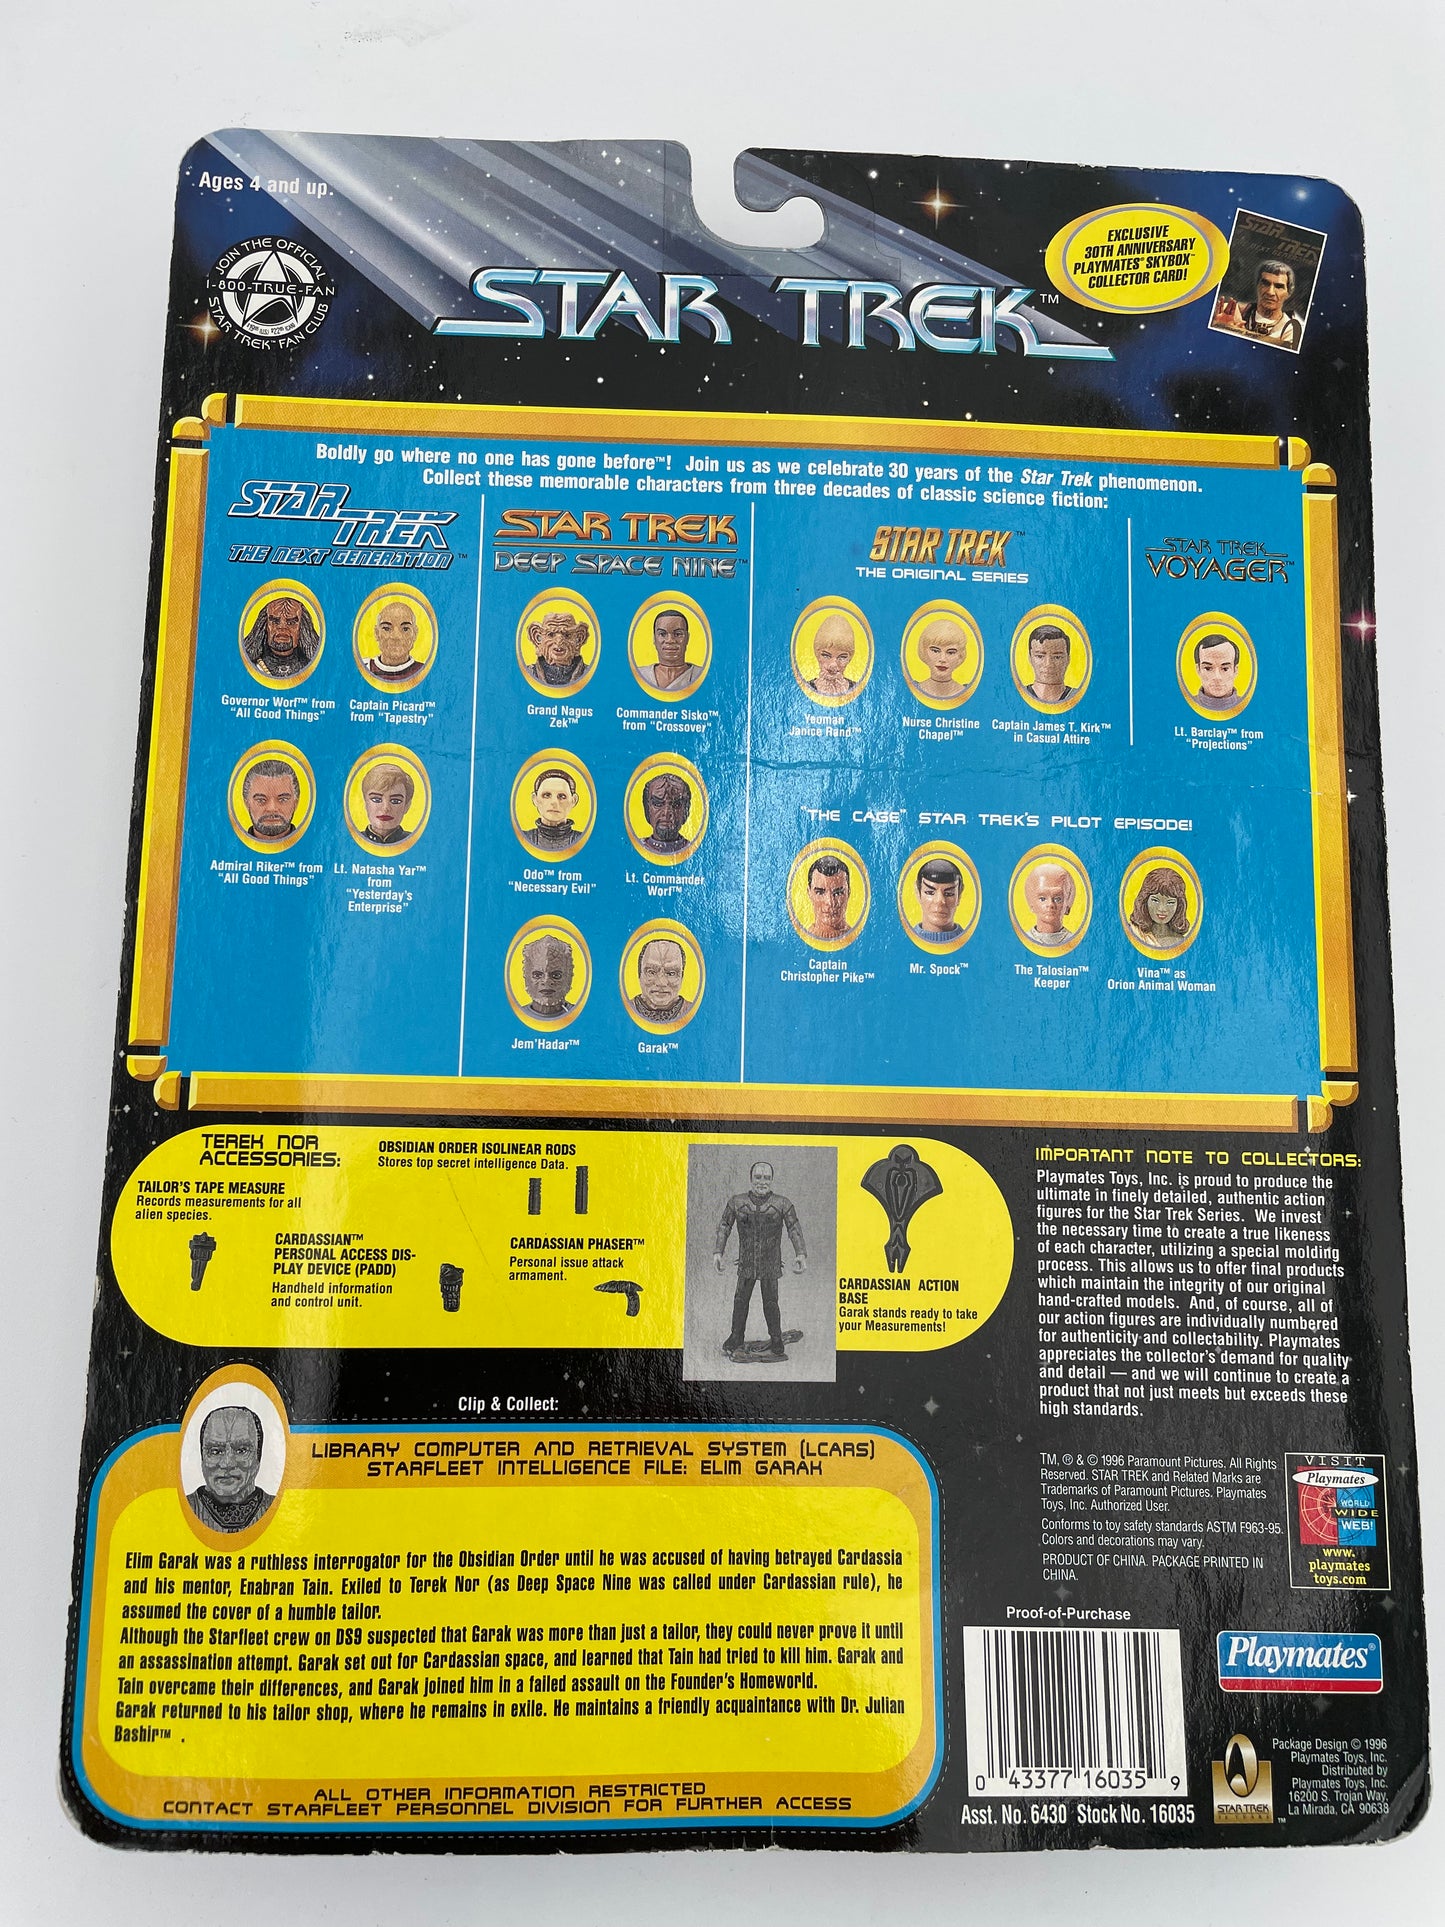 Star Trek - Elim Garak 1996 #100256